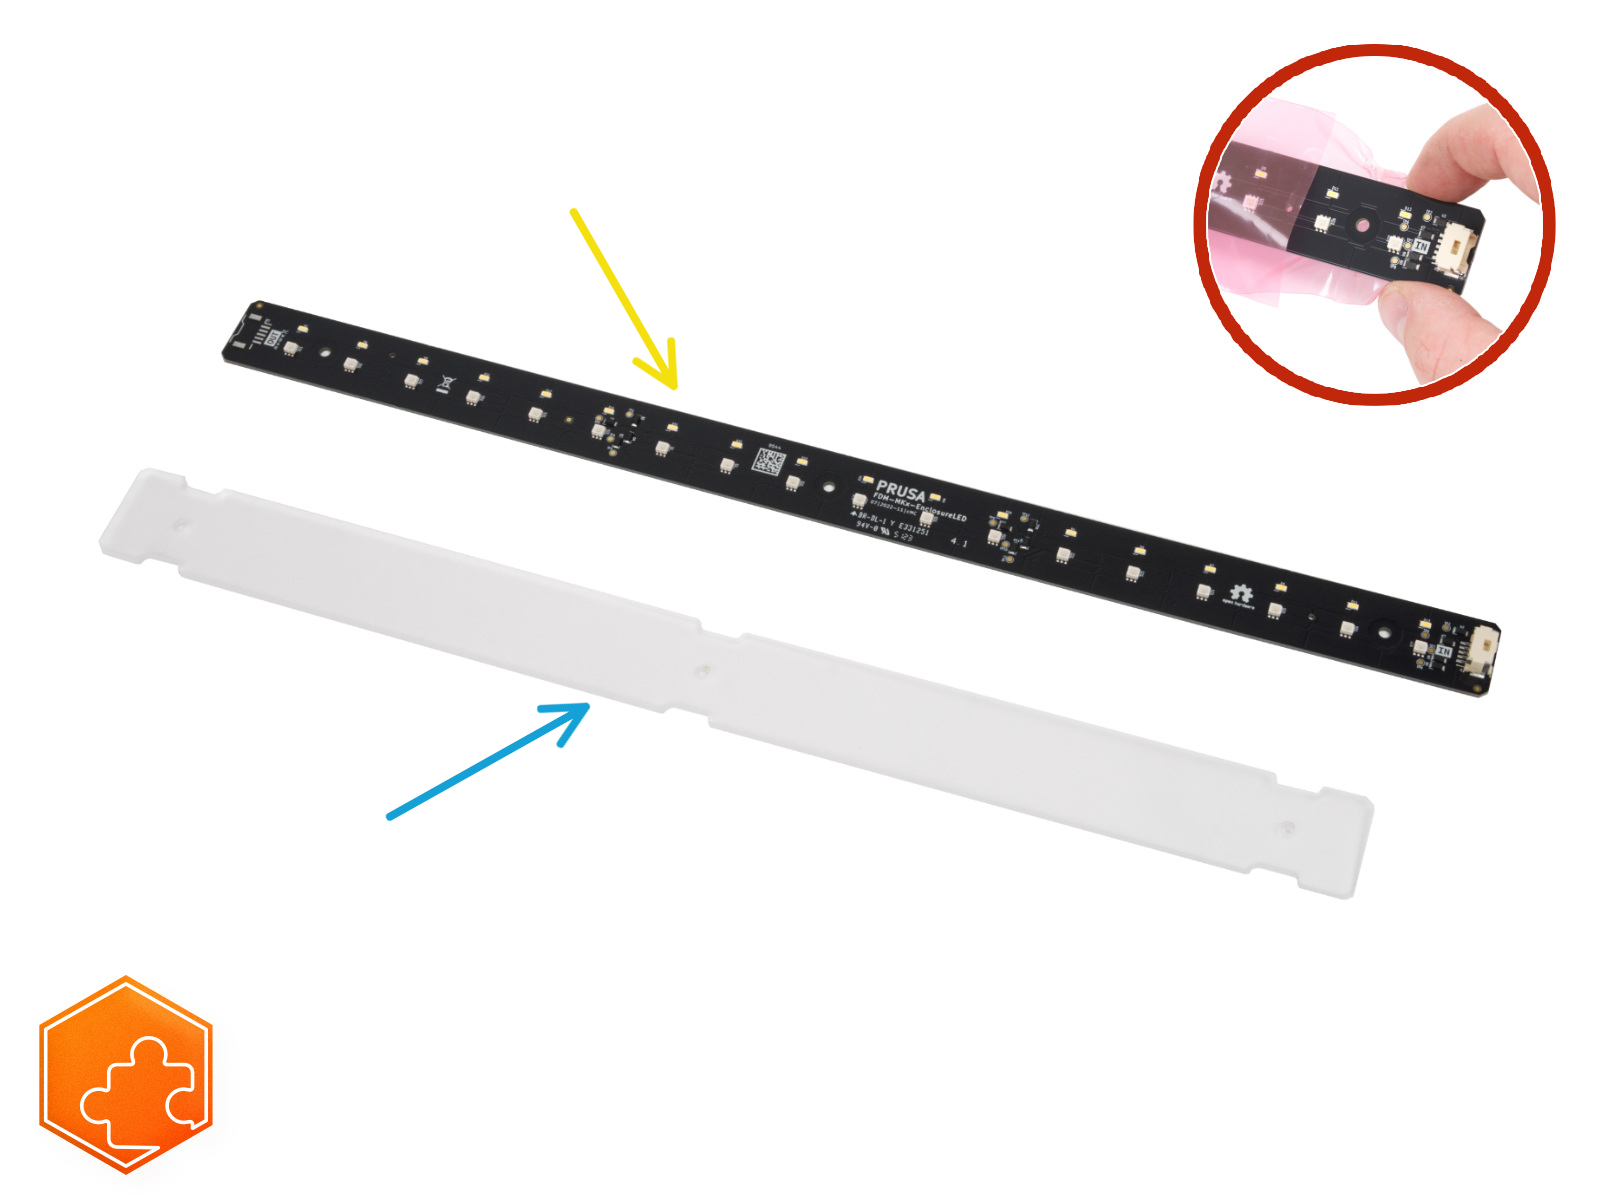 Striscia LED bianca (add-on): preparazione dei componenti